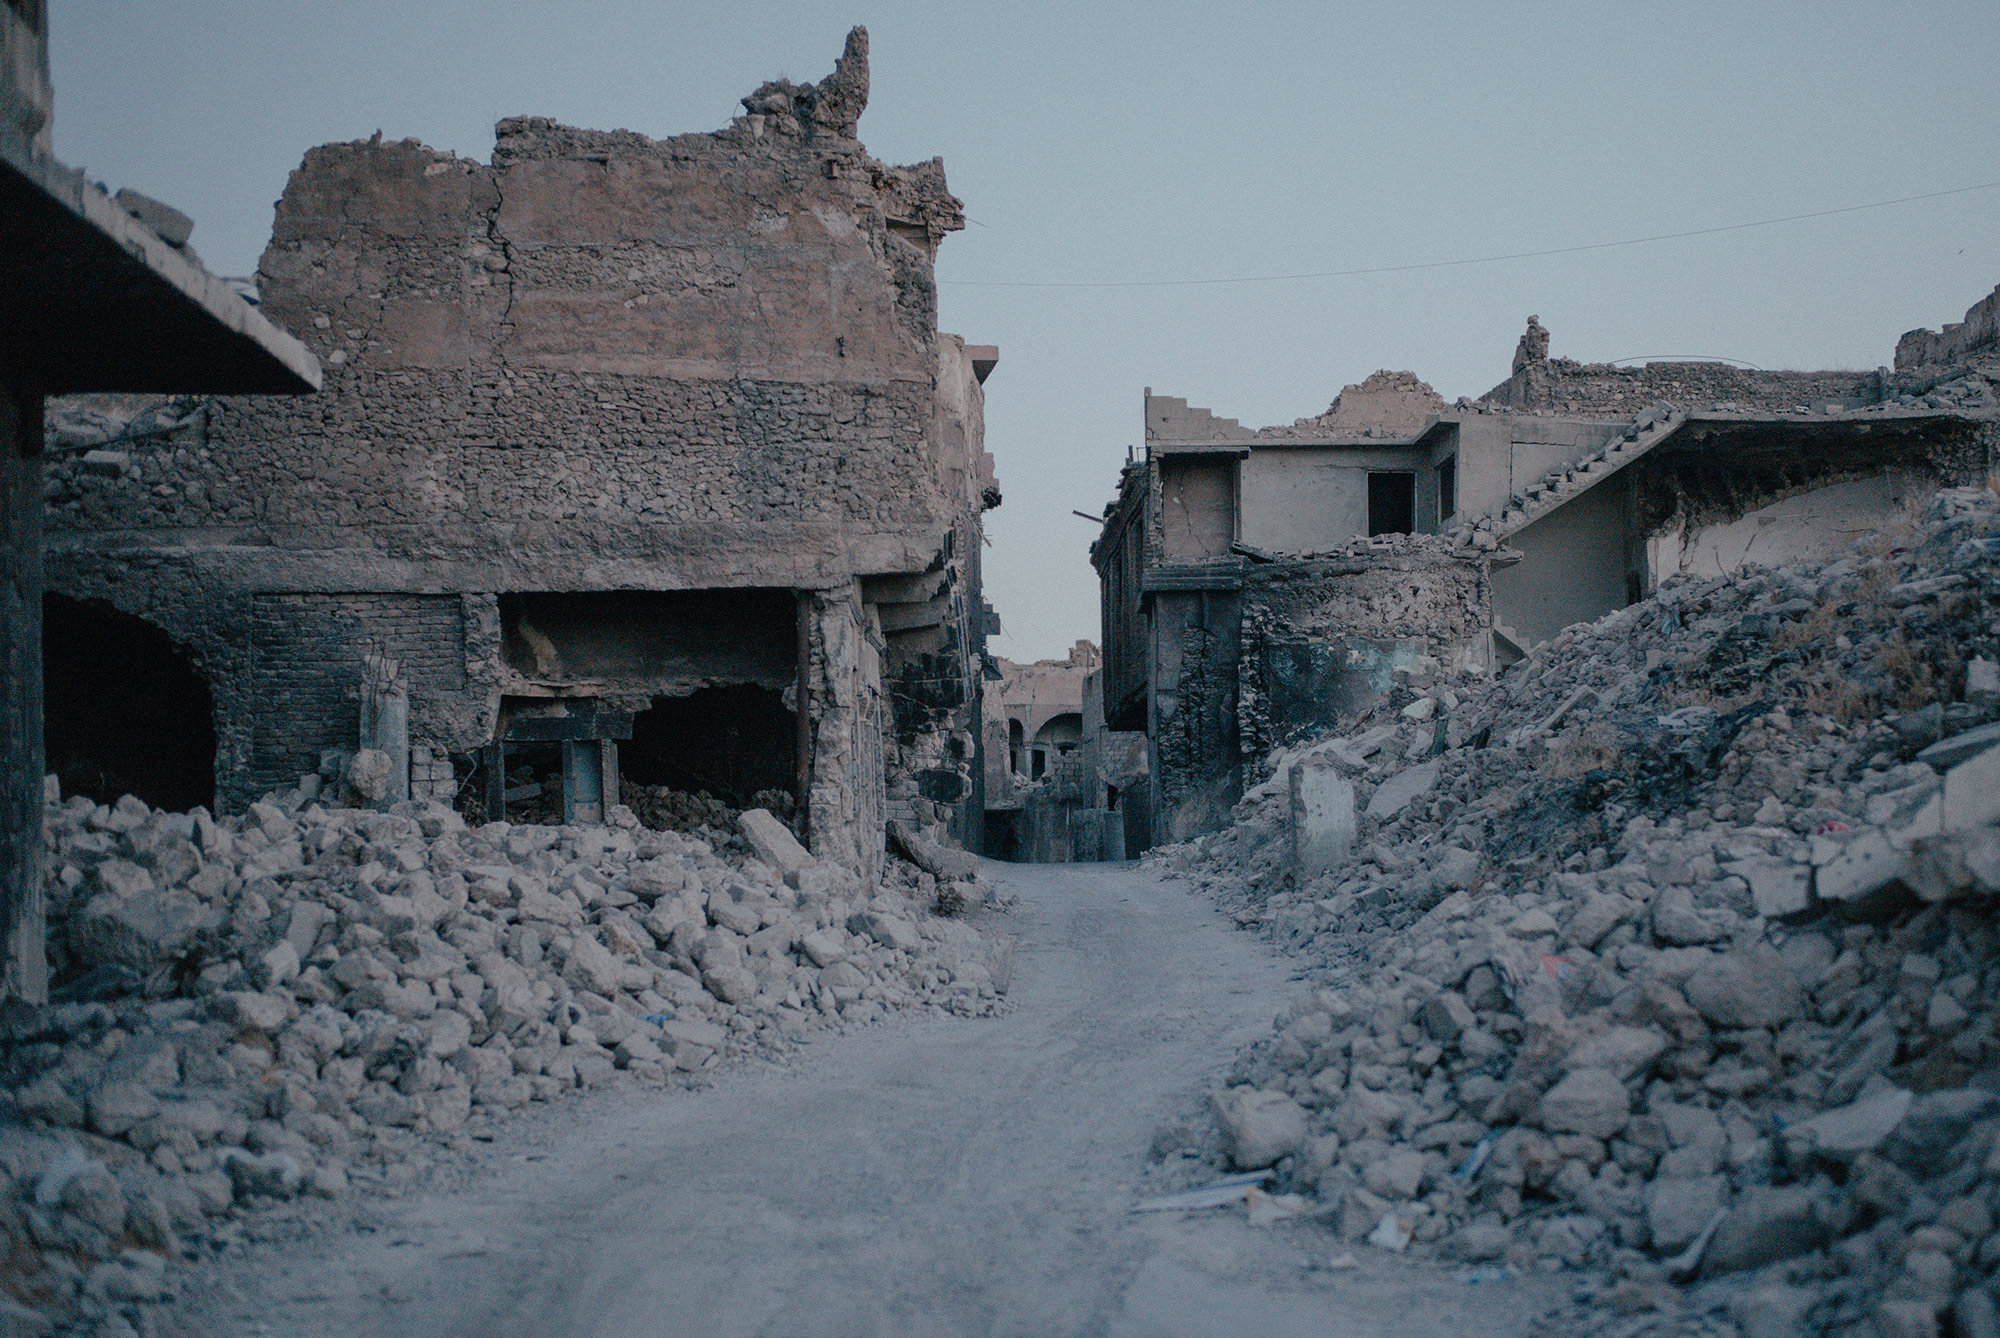 Irak. Mossoul. 16 septembre 2021. La vieille ville de Mossoul en ruines. Après le conflit, seules quelques personnes sont revenues pour reconstruire leurs maisons